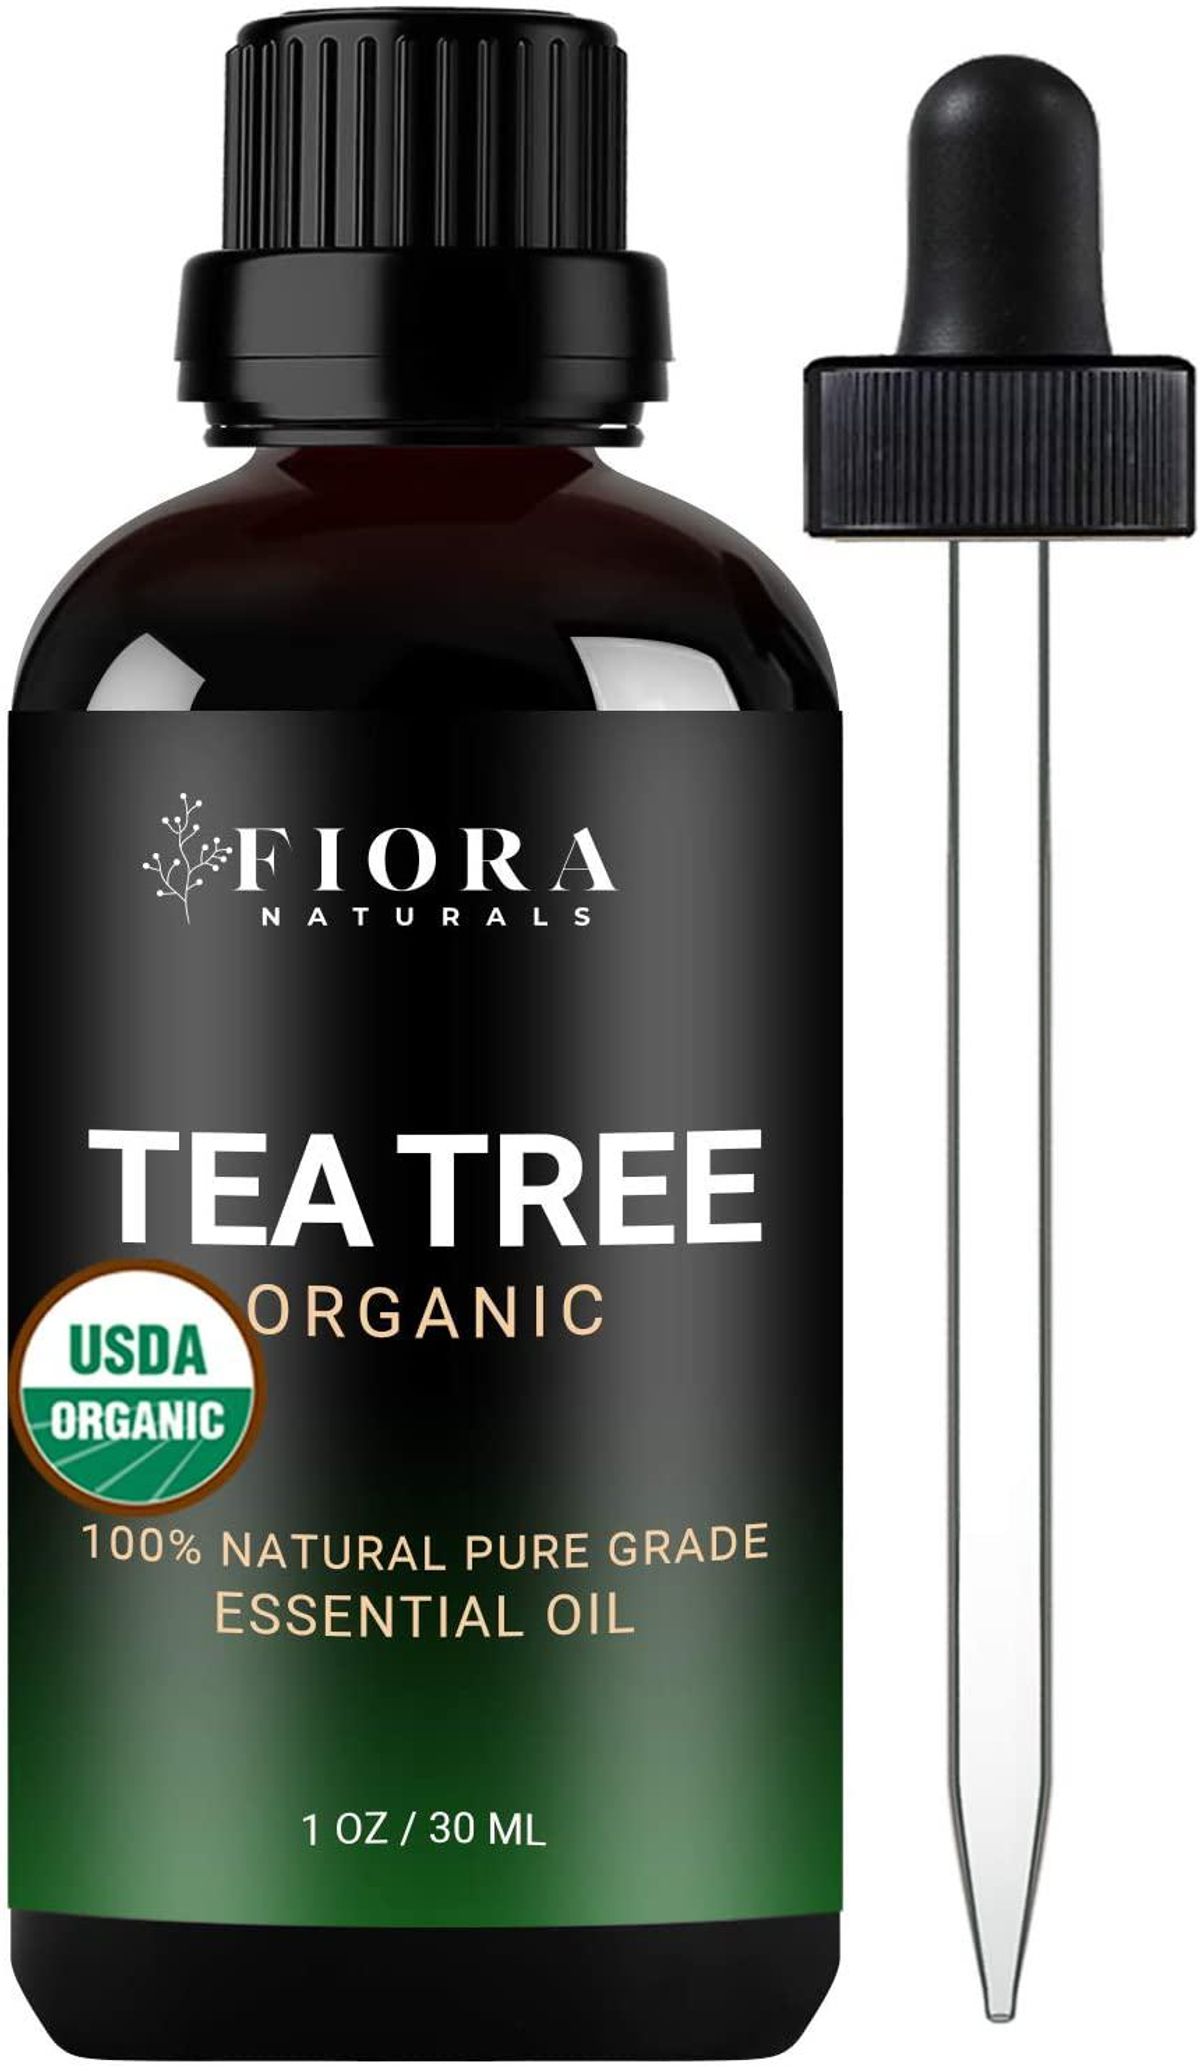 fiora naturals organic tea tree essential oil